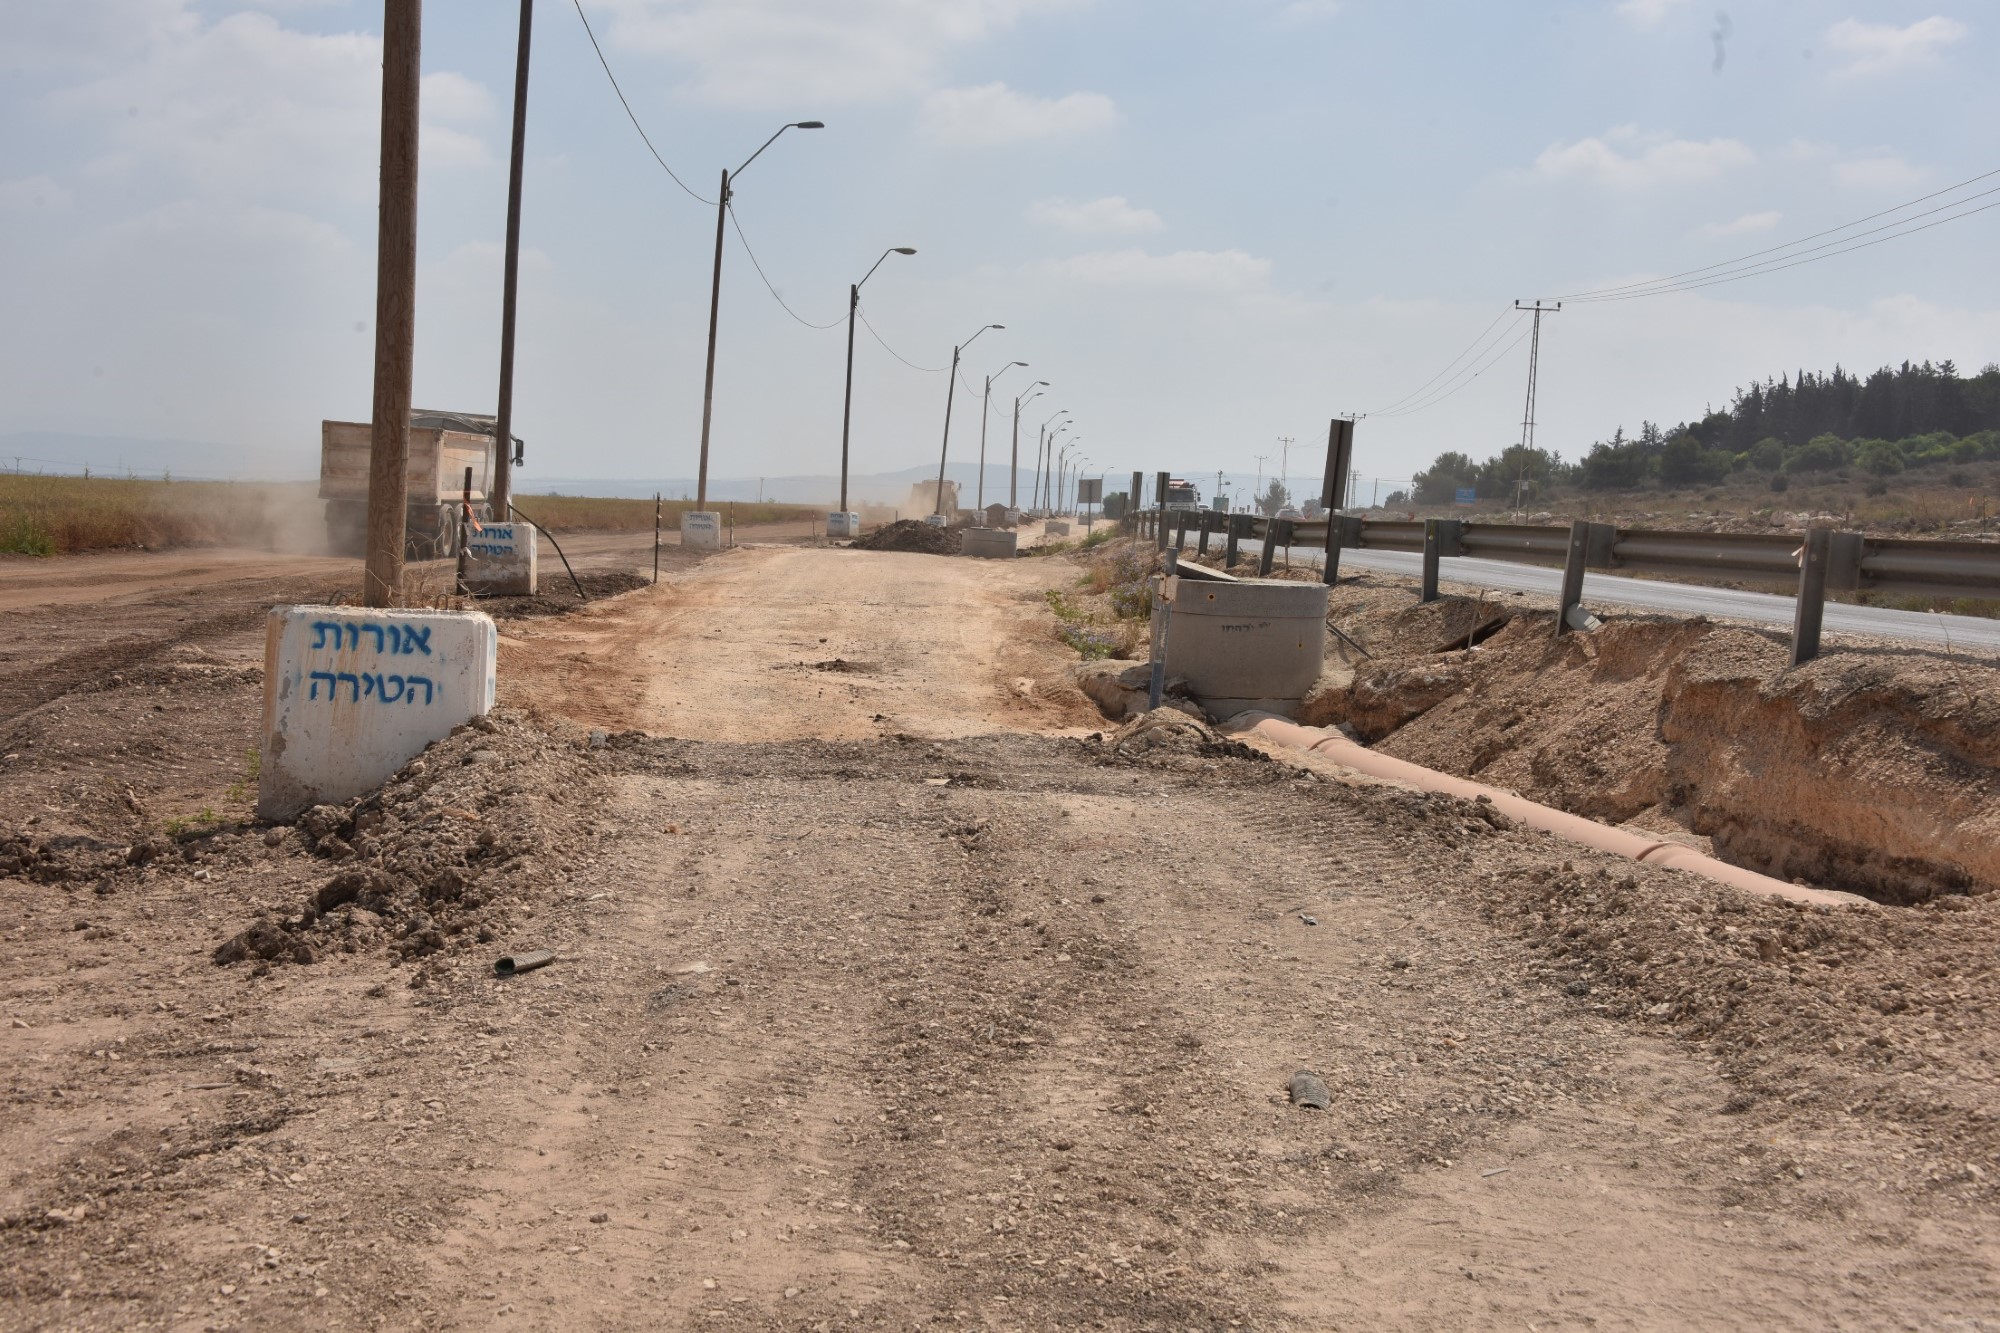 עיריית קרית אתא מבצעת עבודות פיתוח נרחבות בכביש 781 אשר ישדרגו את הכניסה הנוספת לעיר ויפחיתו את עומסי התנועה